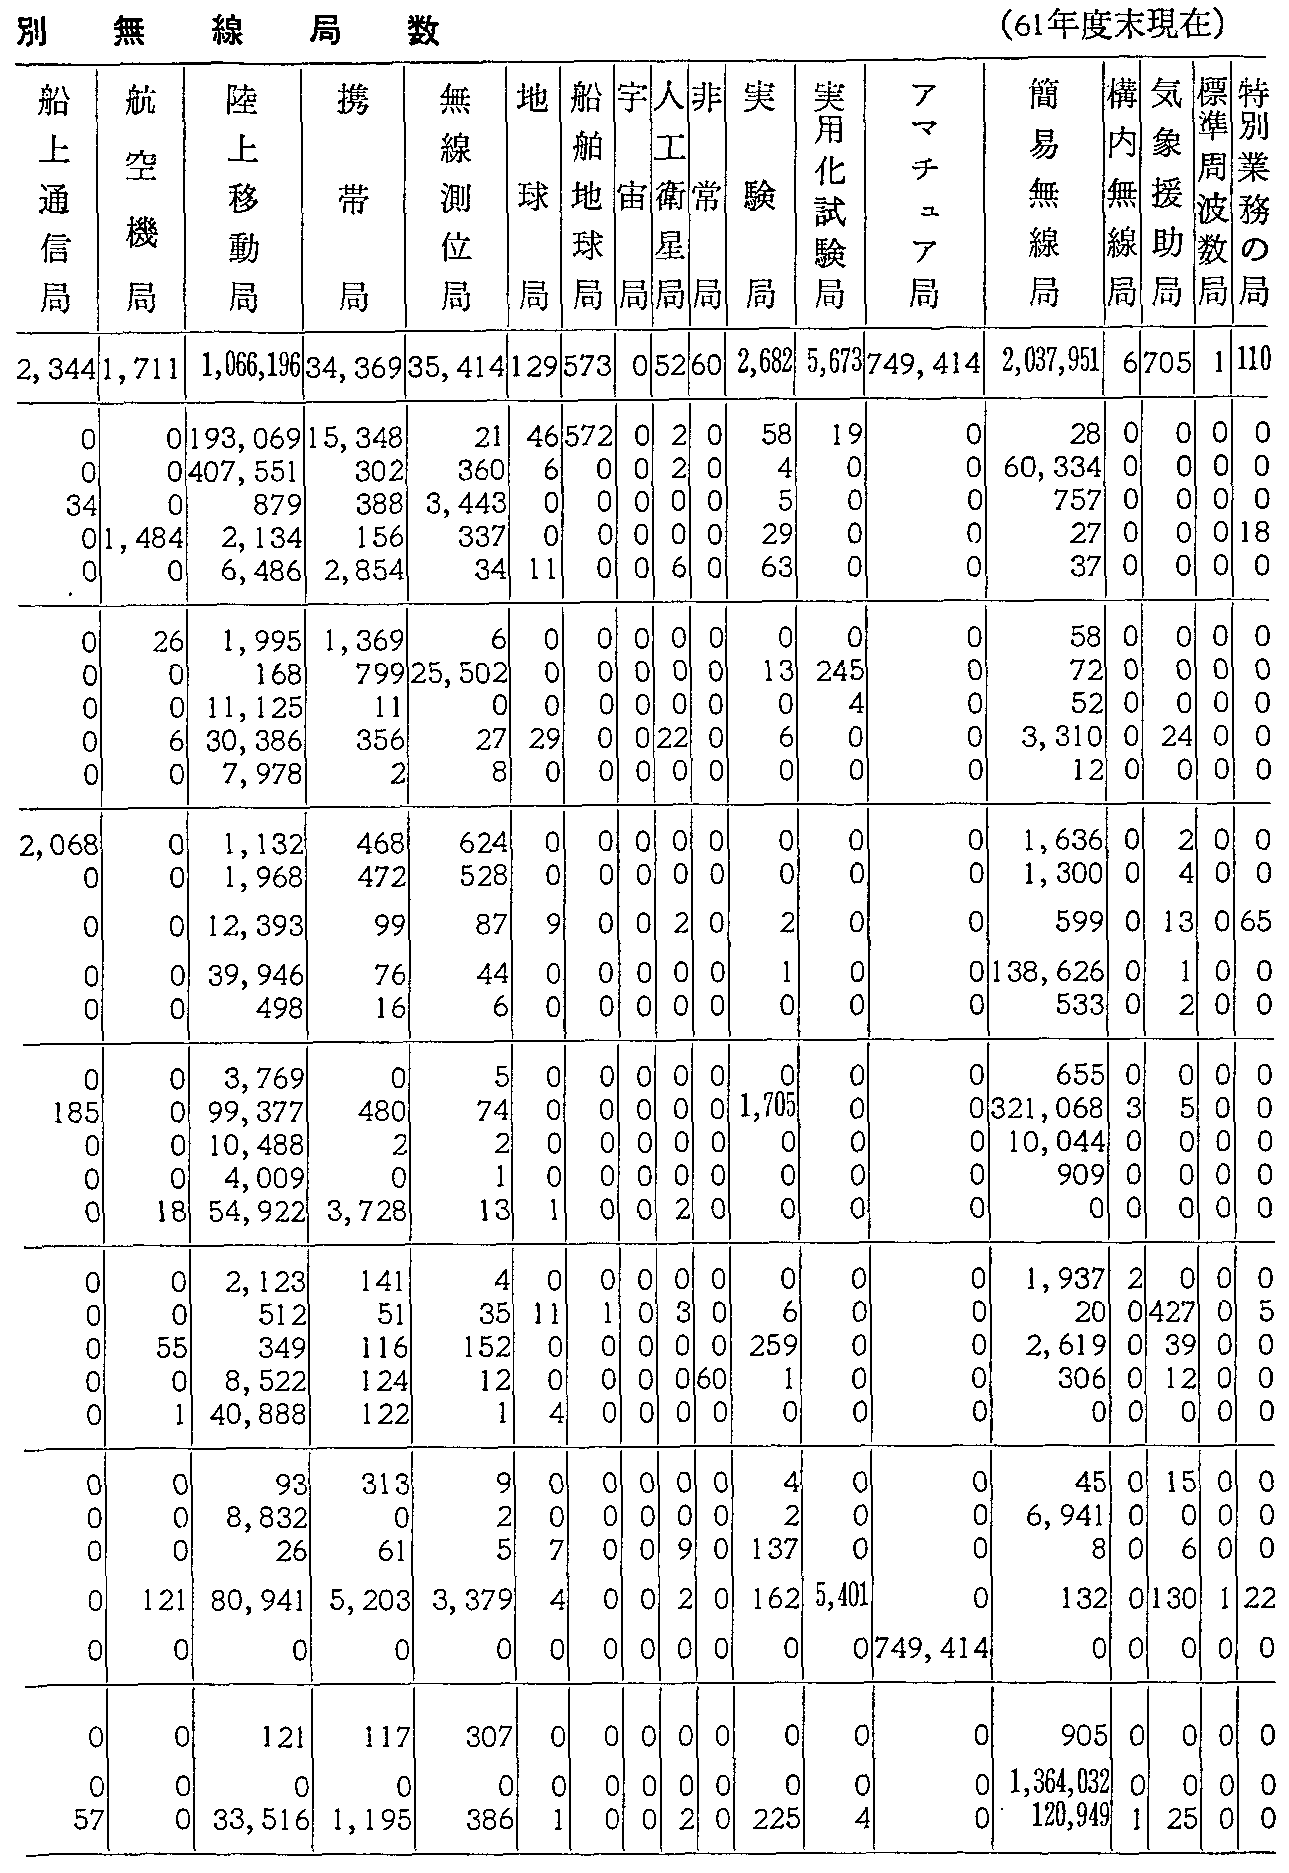 資料3-61 利用分野別無線局数(61年度末現在)(2)